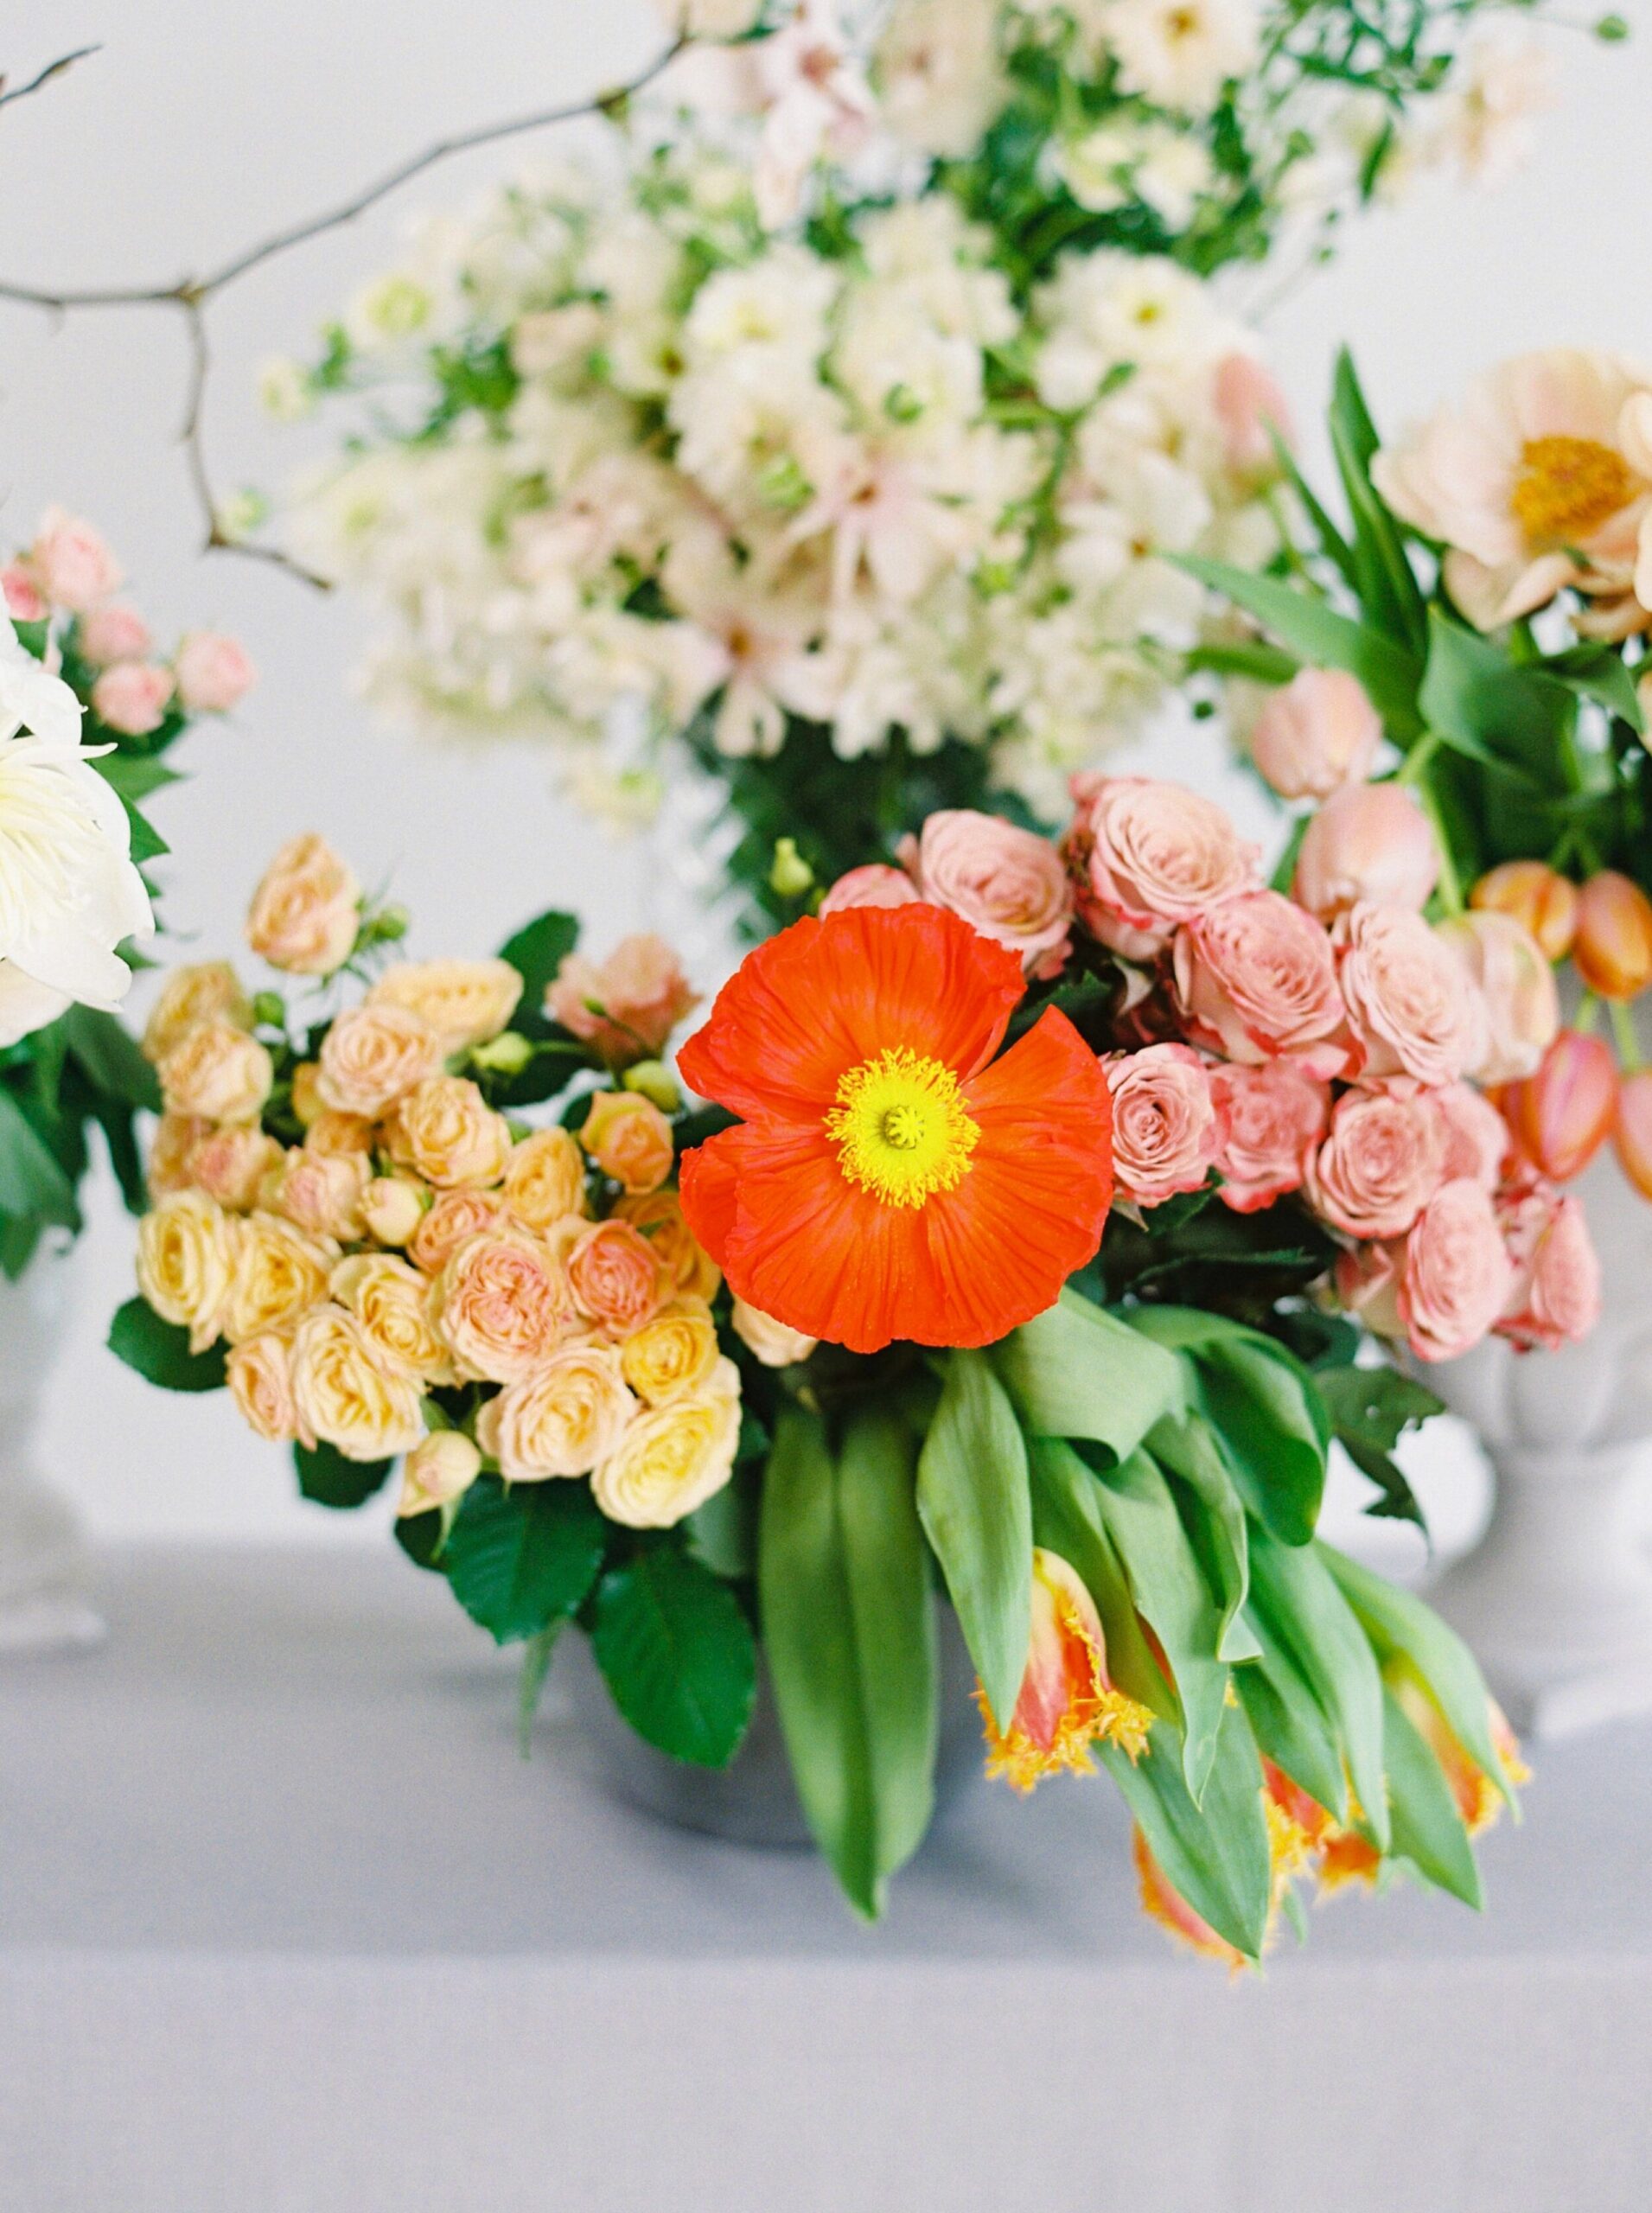  Fine art wedding florist branding shoot | Calgary florists | wedding flowes in calgary | fine art film photographers 